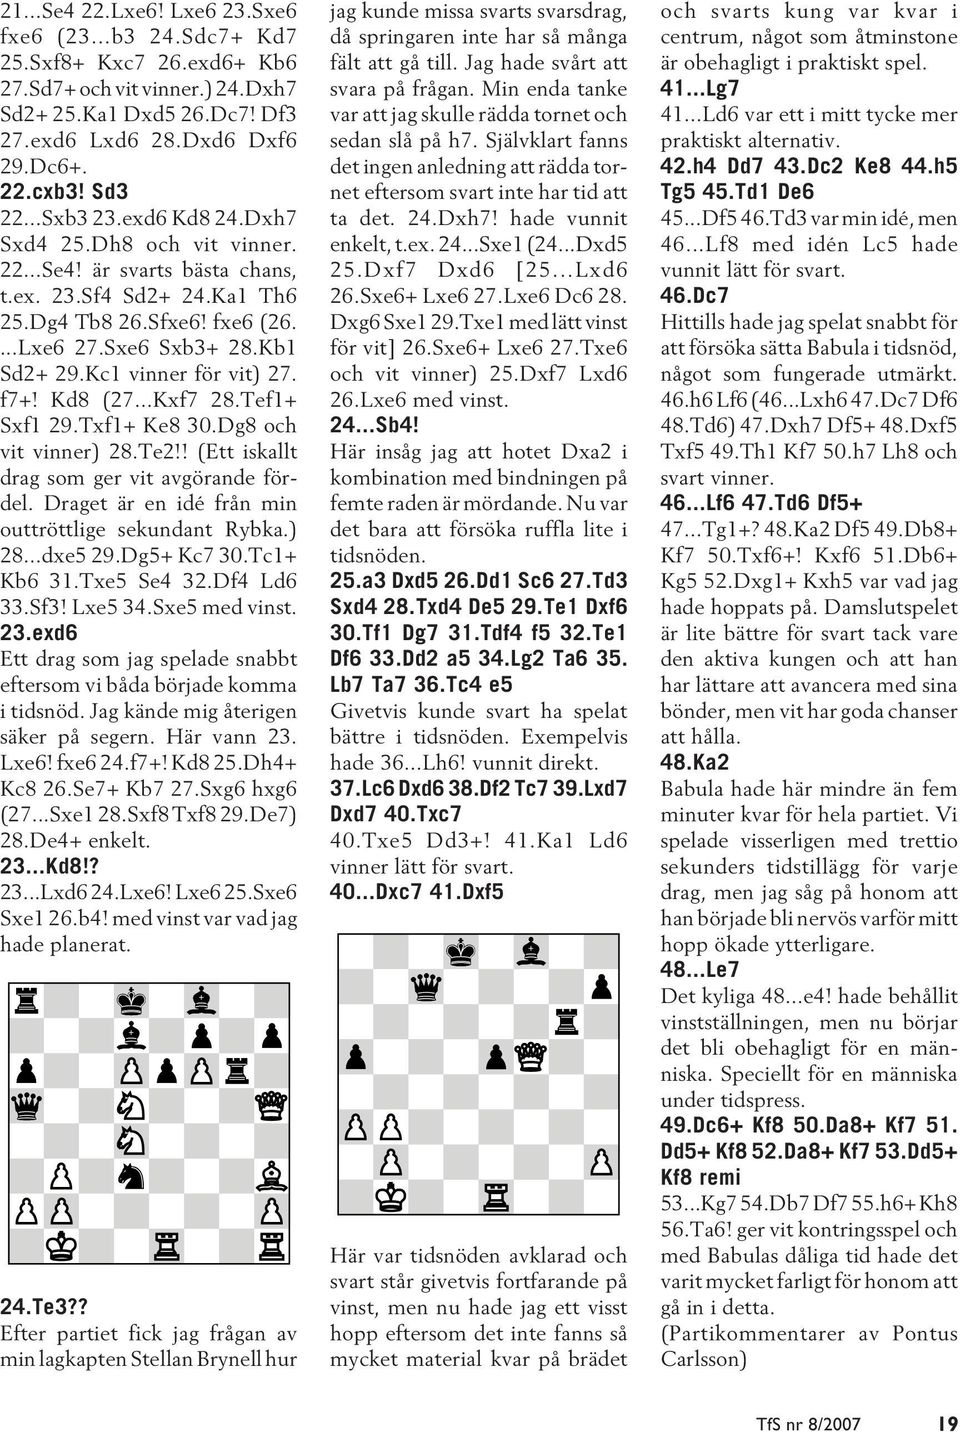 Kc1 vinner för vit) 27. f7+! Kd8 (27...Kxf7 28.Tef1+ Sxf1 29.Txf1+ Ke8 30.Dg8 och vit vinner) 28.Te2!! (Ett iskallt drag som ger vit avgörande fördel.